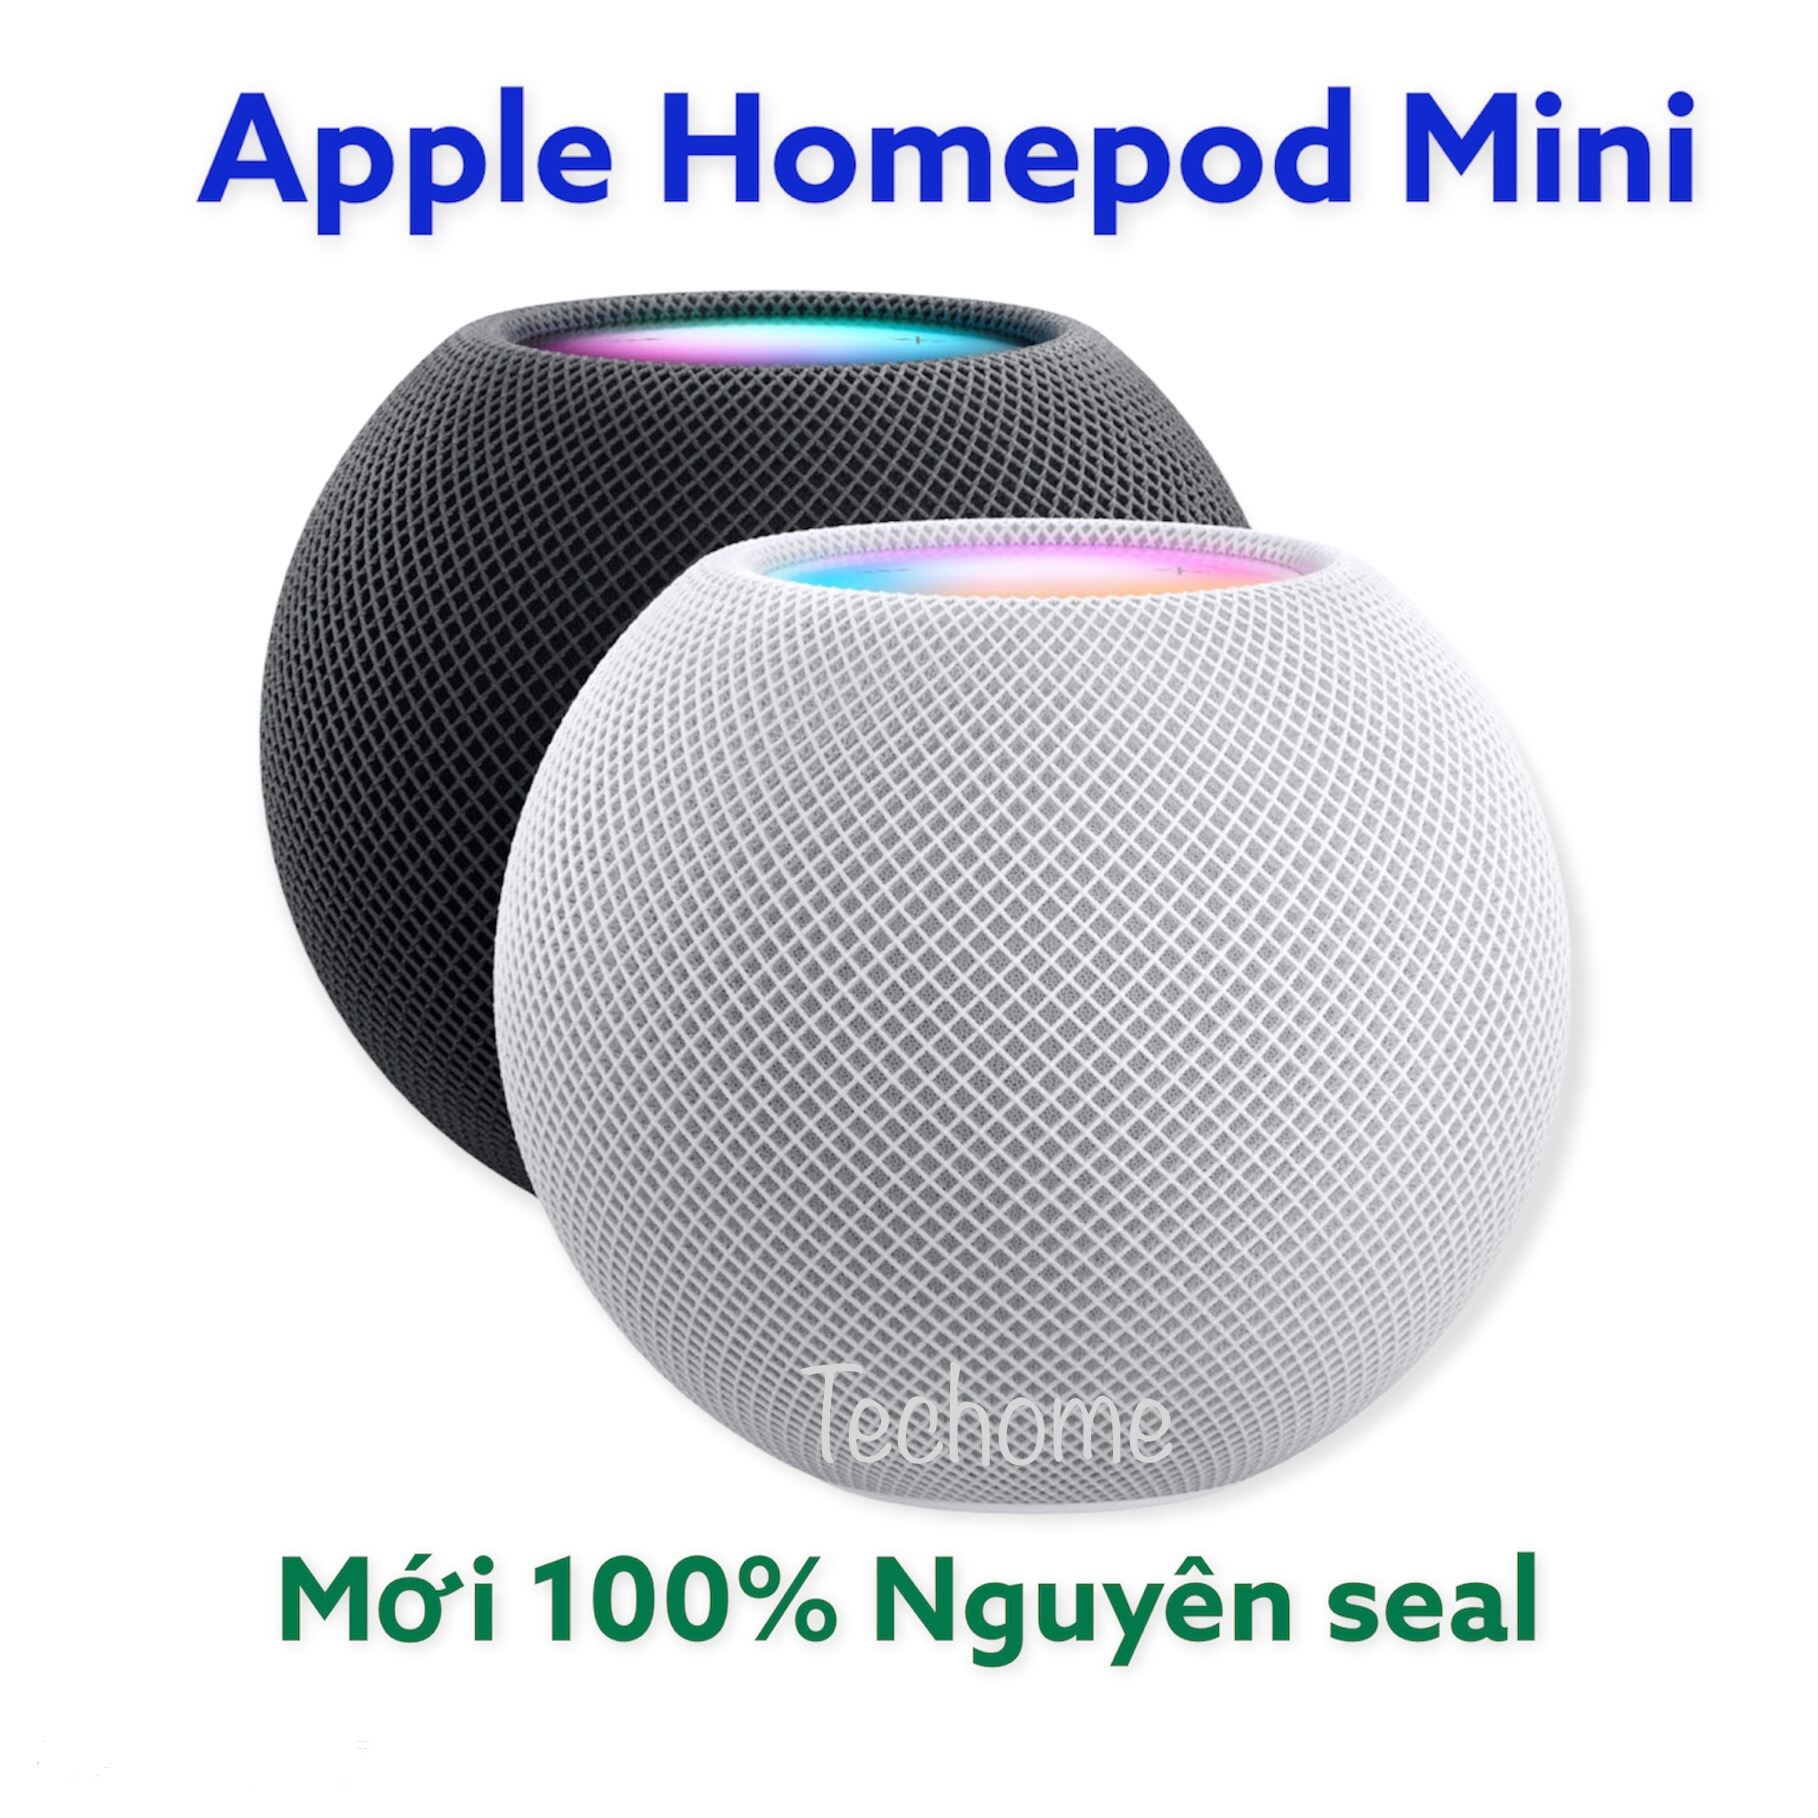 Loa thông minh Apple HomePod Mini mới 100% Nguyên seal từ hãng